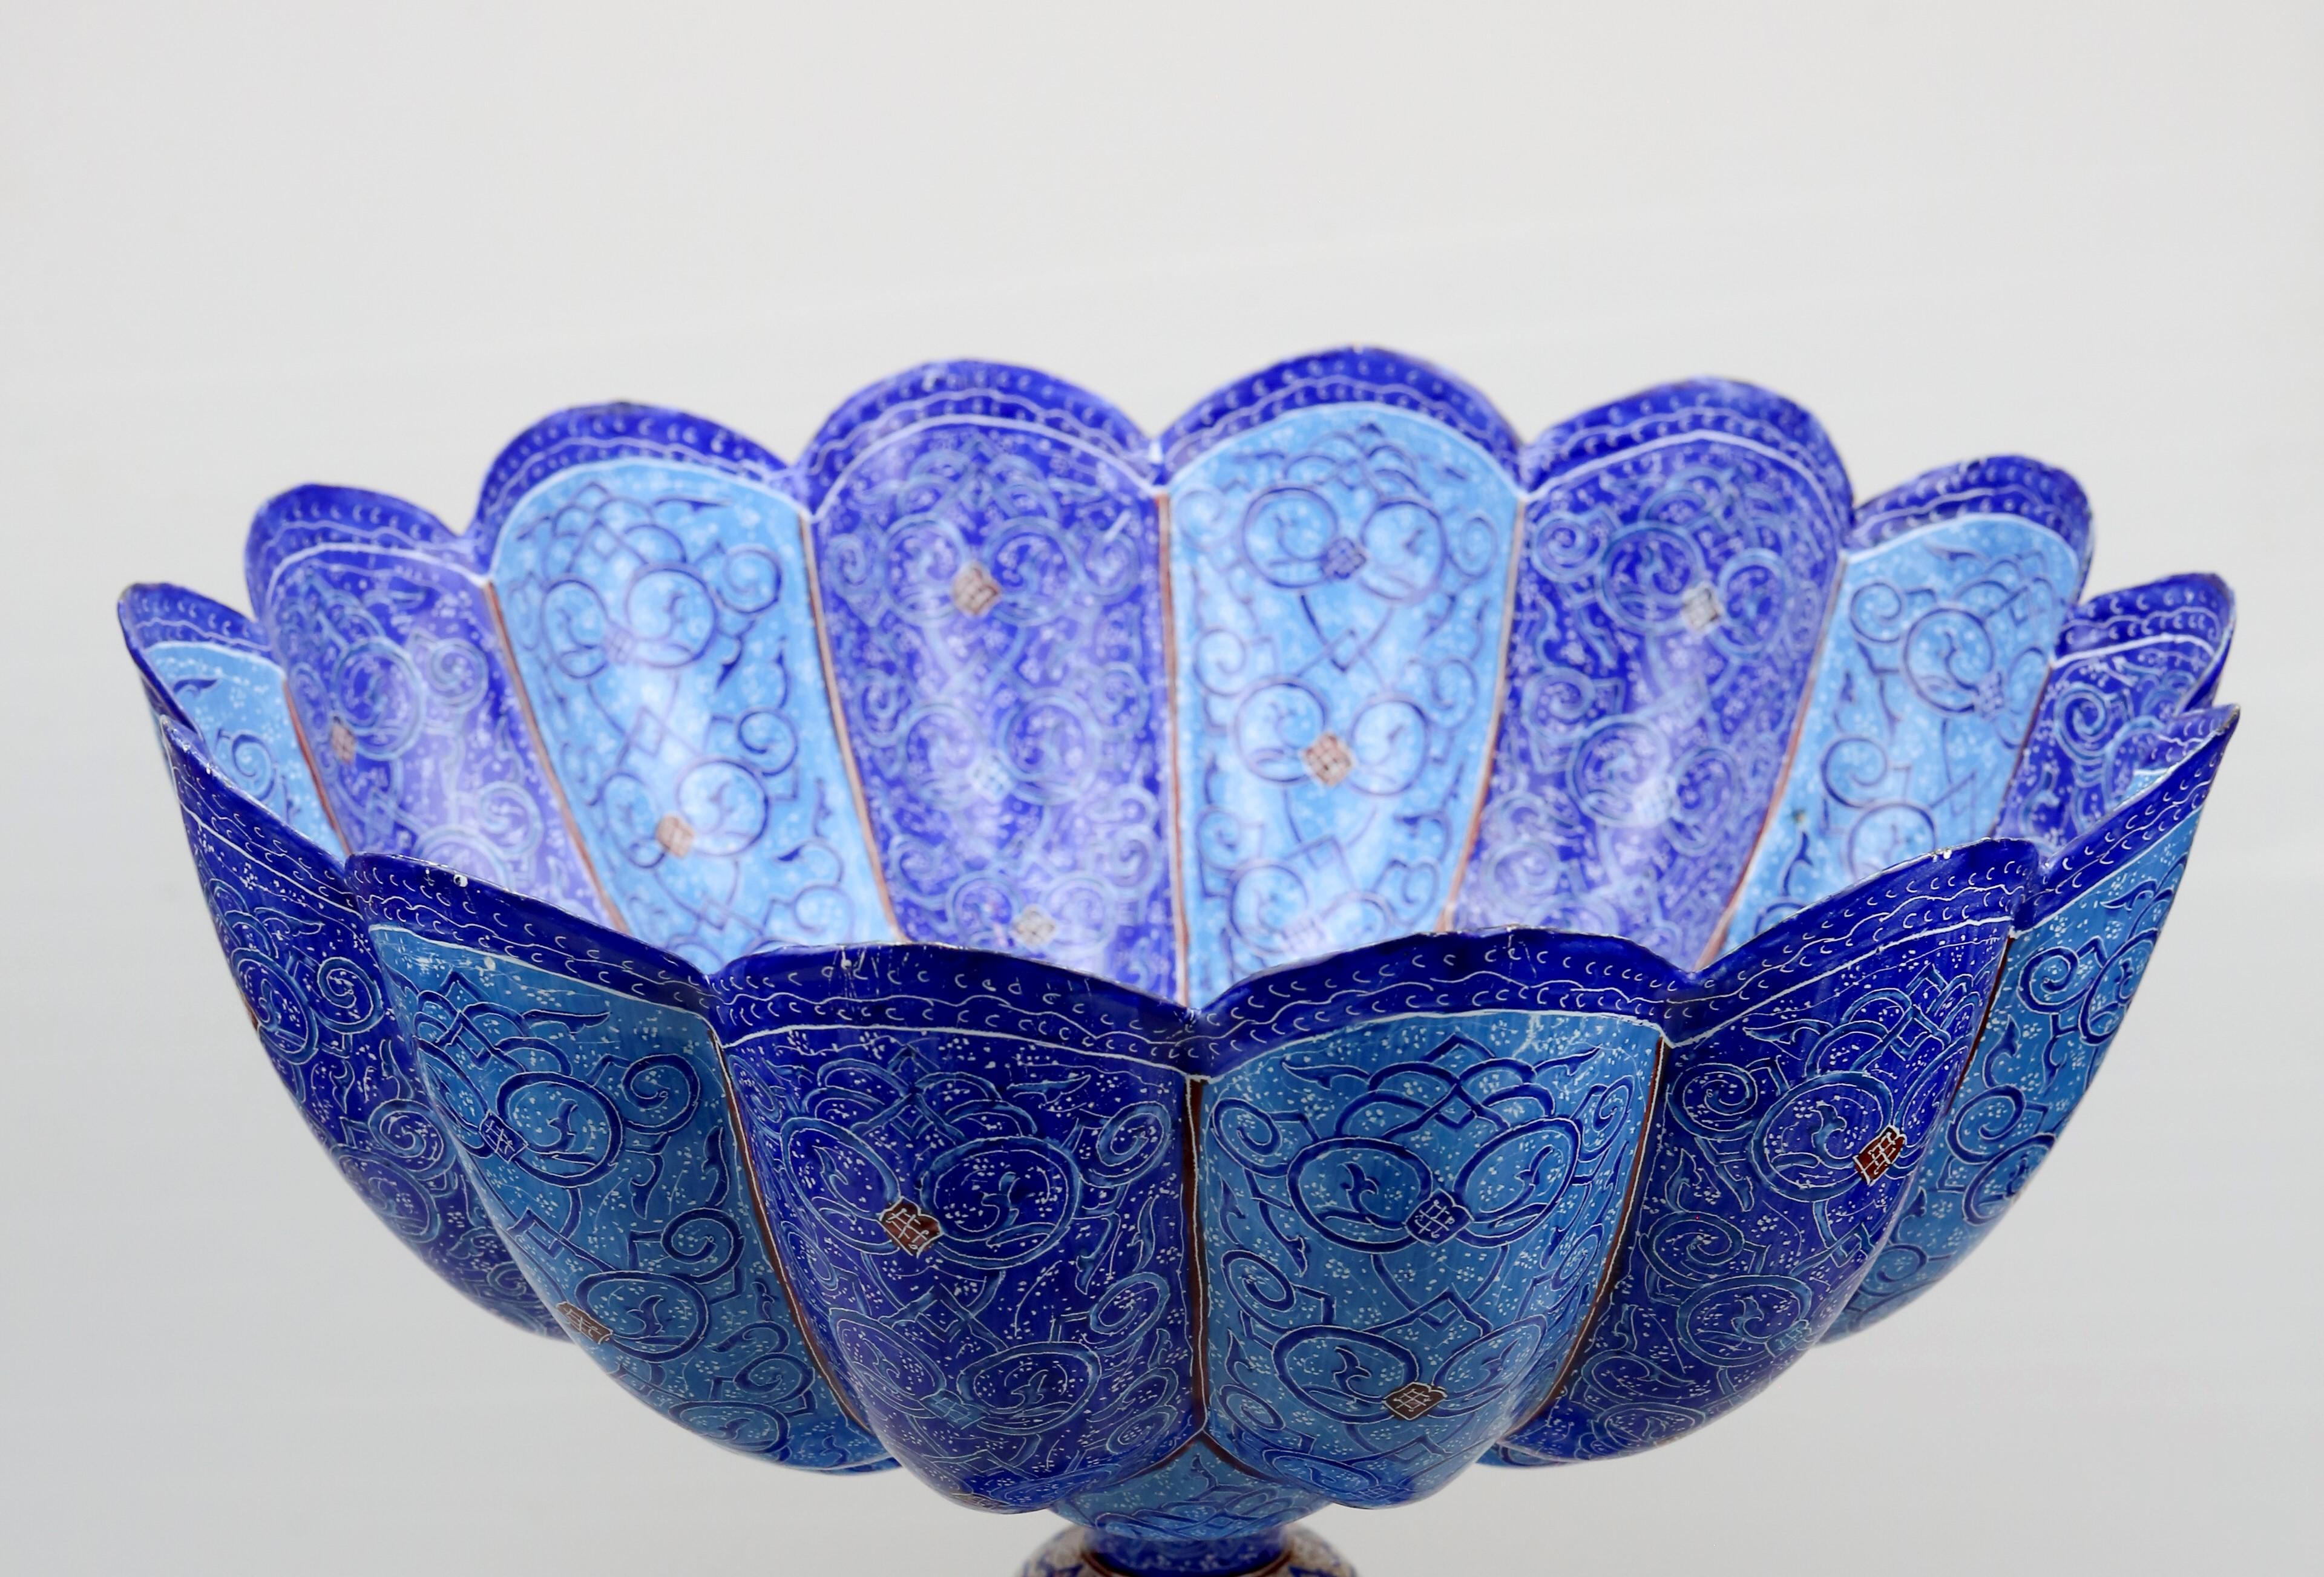 Tabriz Persian Minakari Bowl (Persian: میناکاری)